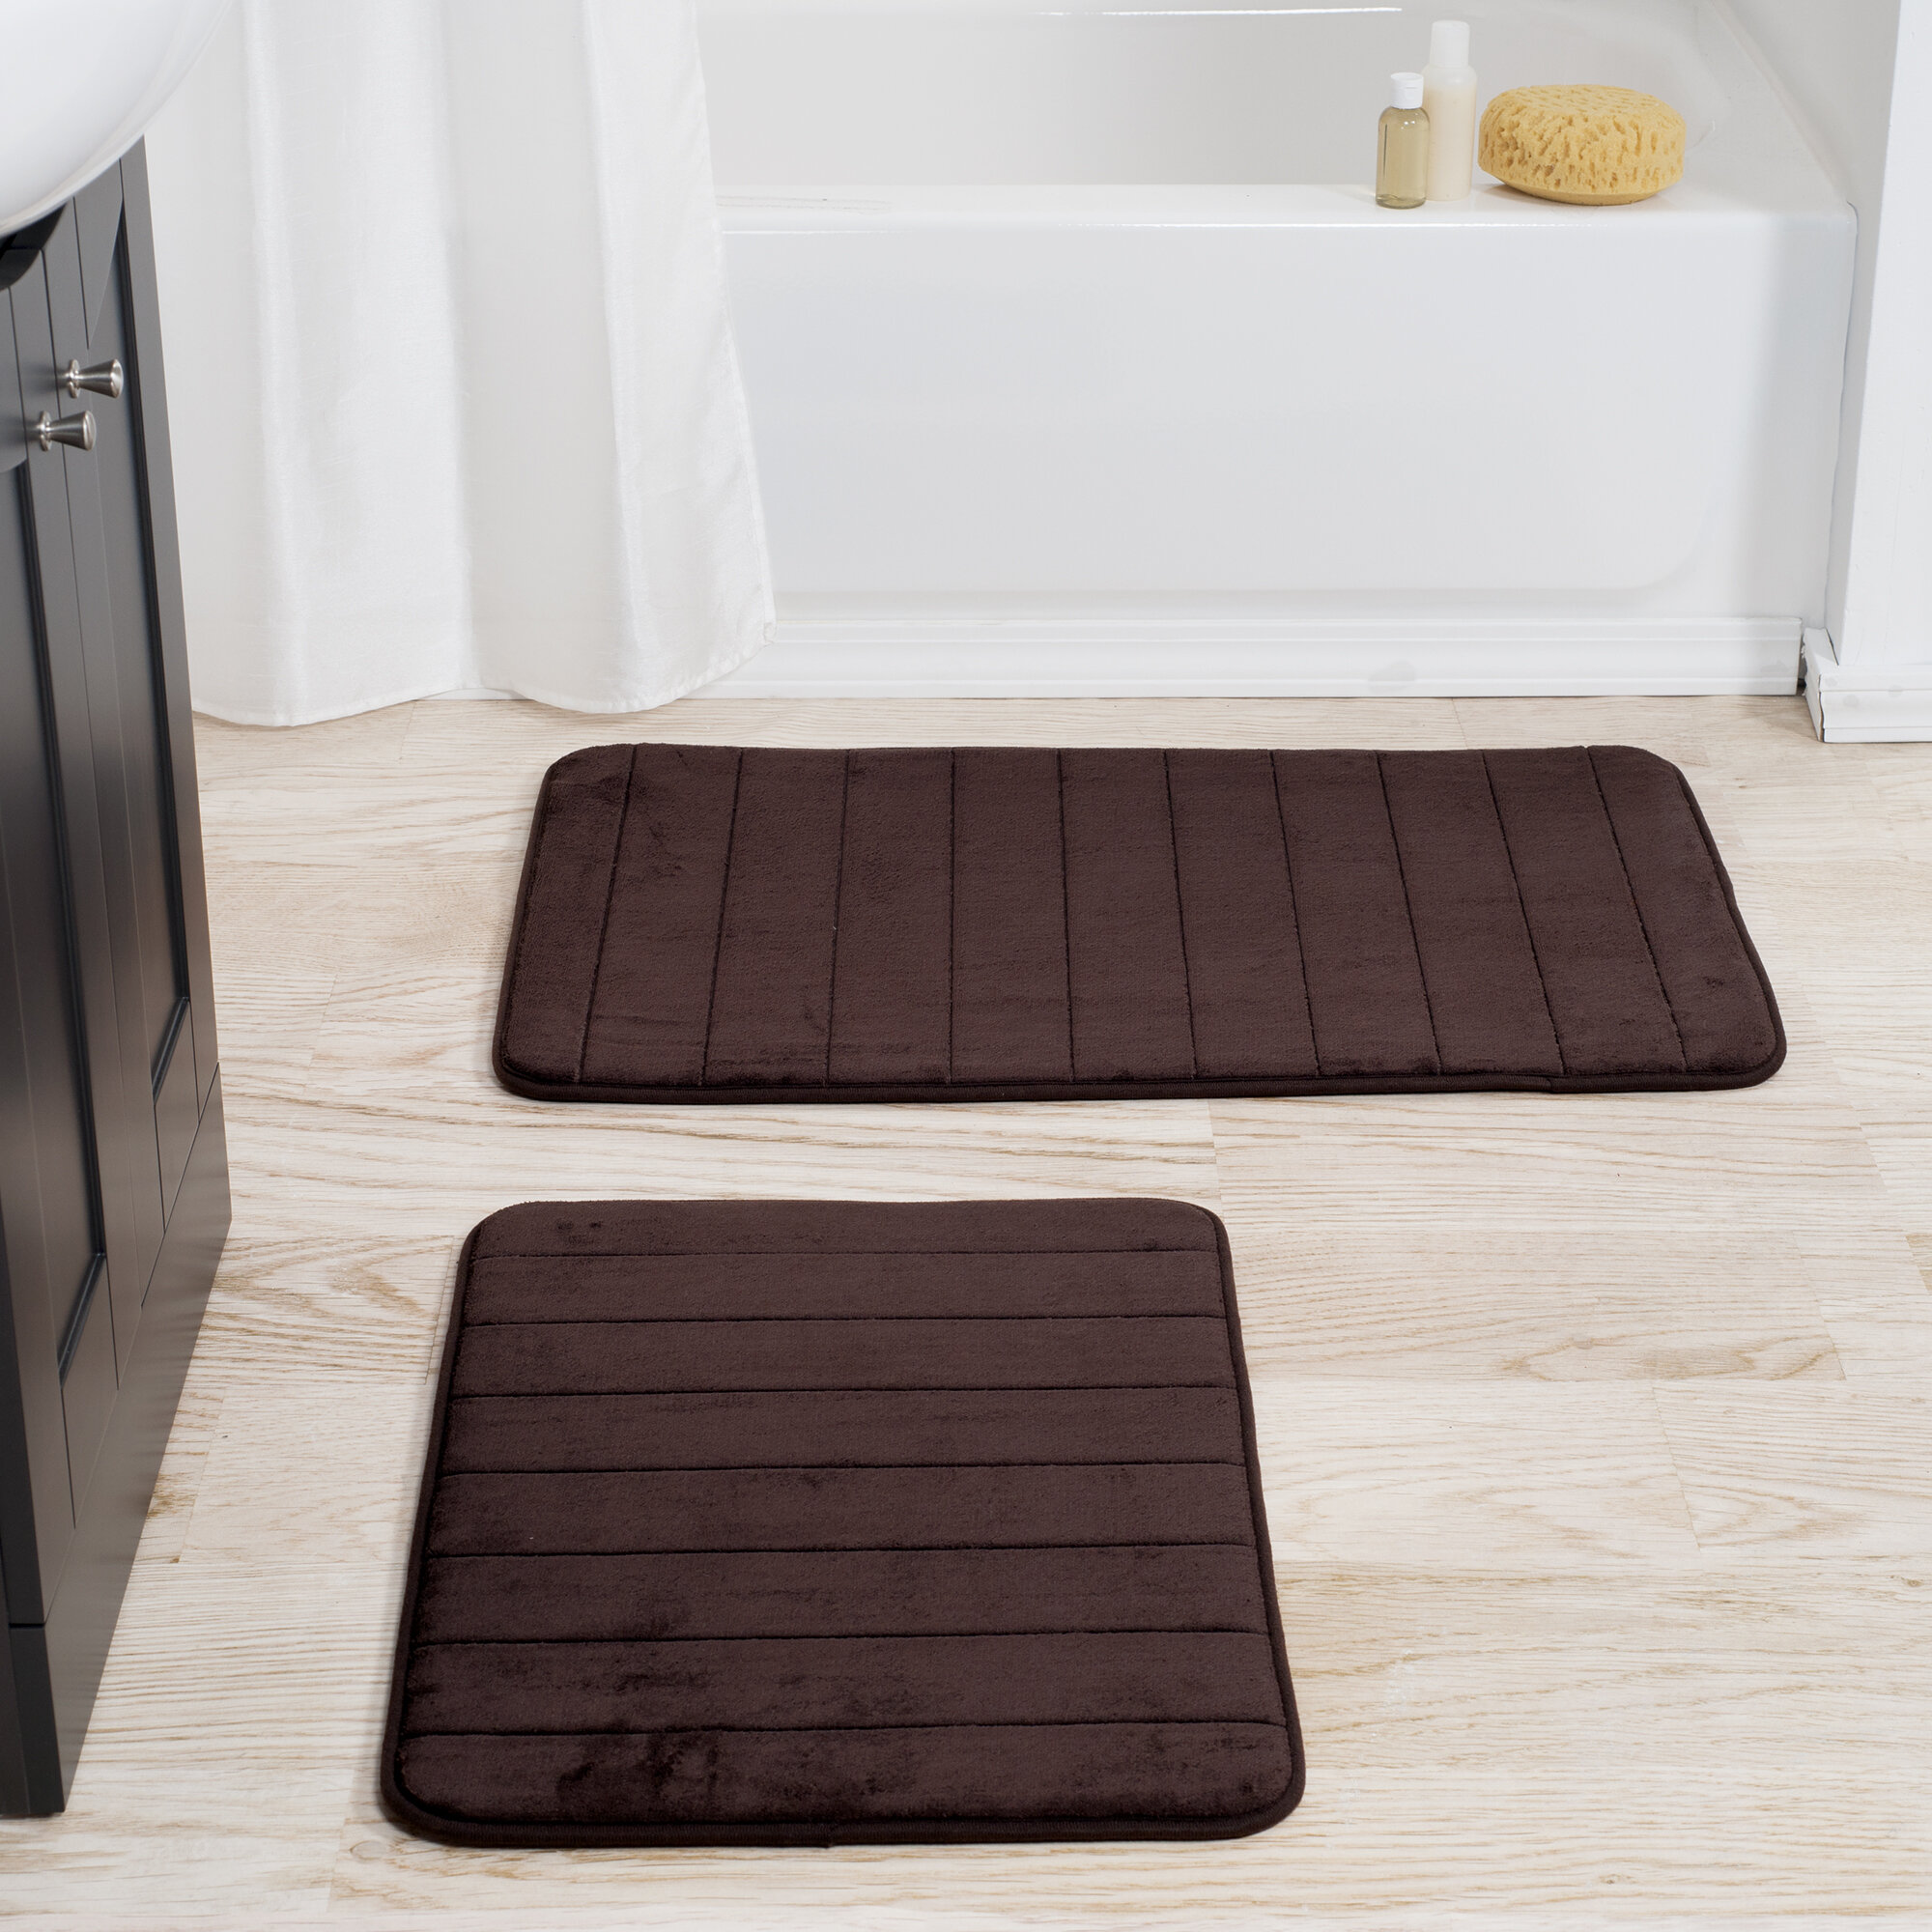 https://assets.wfcdn.com/im/27510958/compr-r85/3869/38694378/billybob-memory-foam-bath-rug-set-2-piece-bath-mats-with-microfiber-top-non-slip-absorbent-rugs.jpg